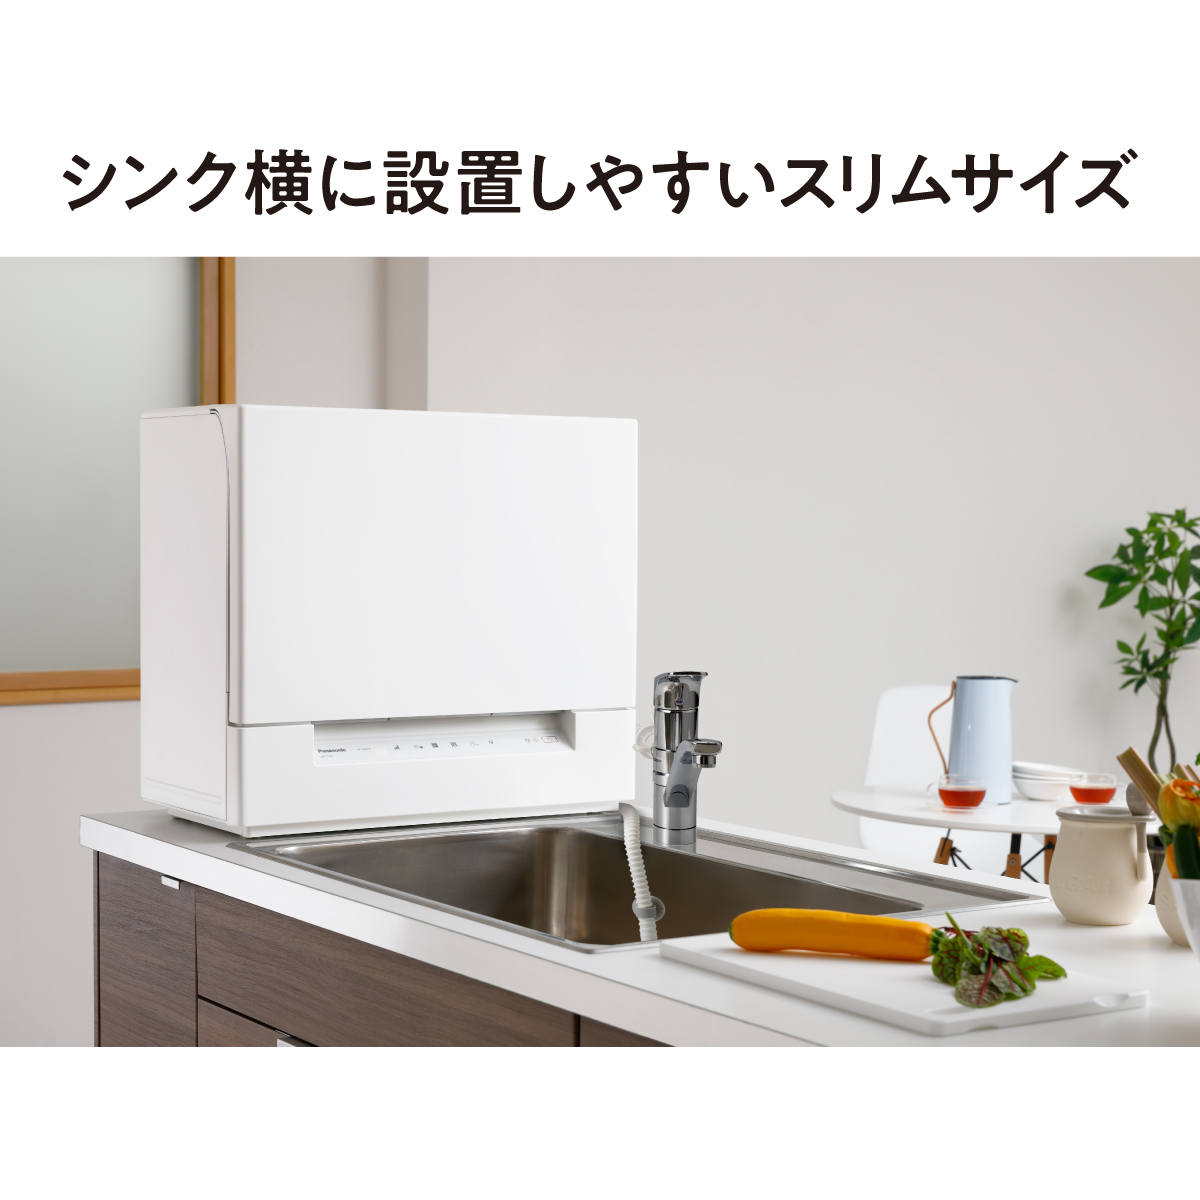 パナソニック(Panasonic) N-SP3 コンパクト食器洗い乾燥機用置台